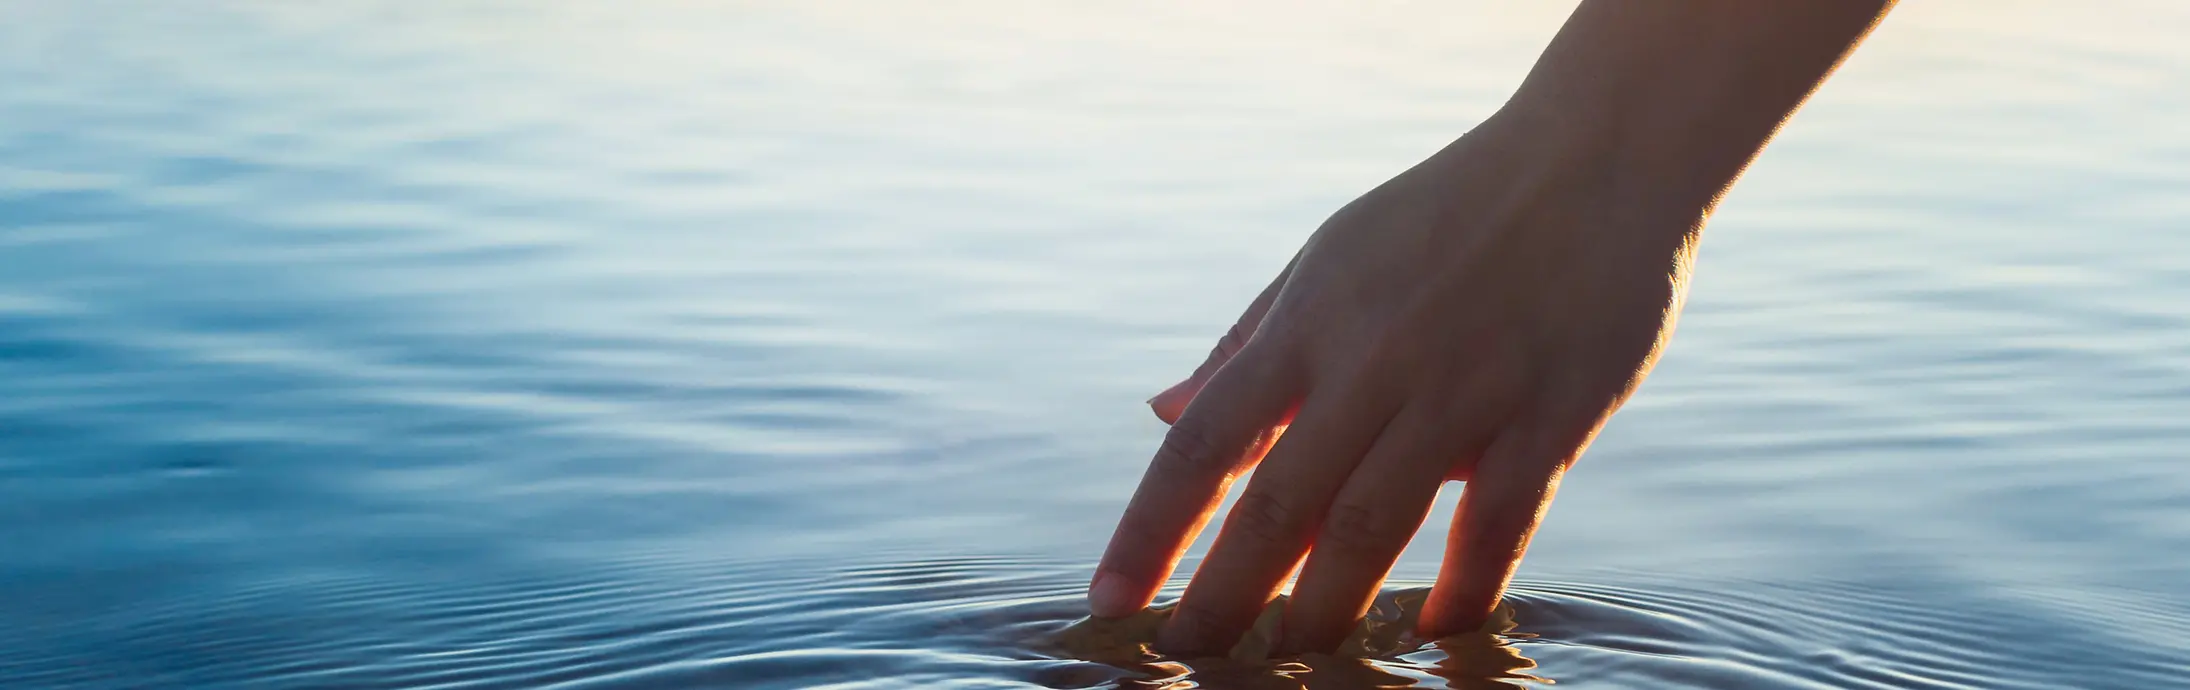 Una mano acaricia una superficie de agua en calma frente al horizonte